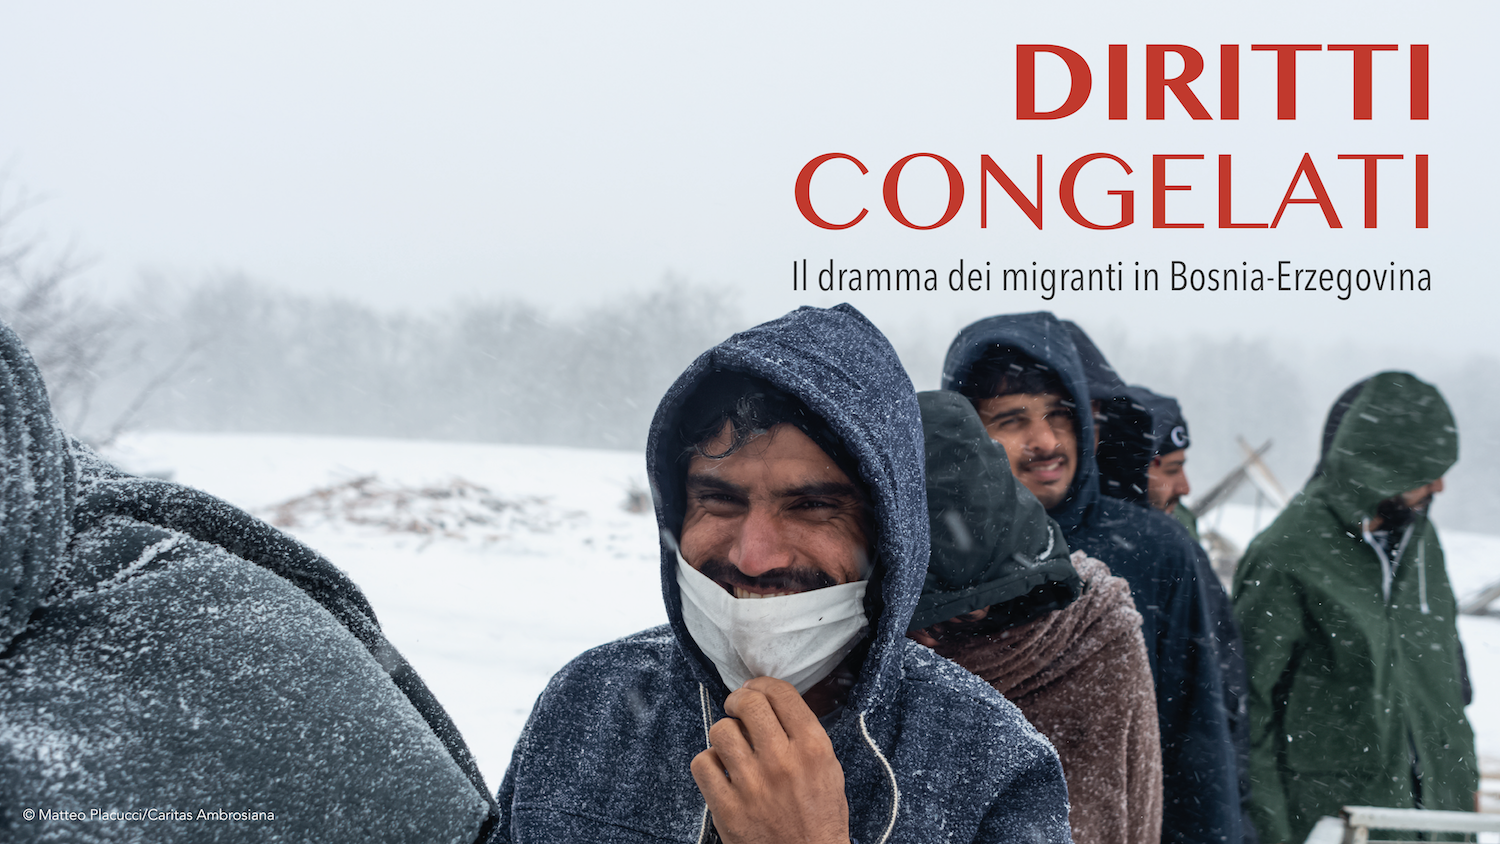 Le Caritas del Nord-Est unite per raccontare il dramma dei migranti in Bosnia-Erzegovina:  22 febbraio “Diritti congelati”